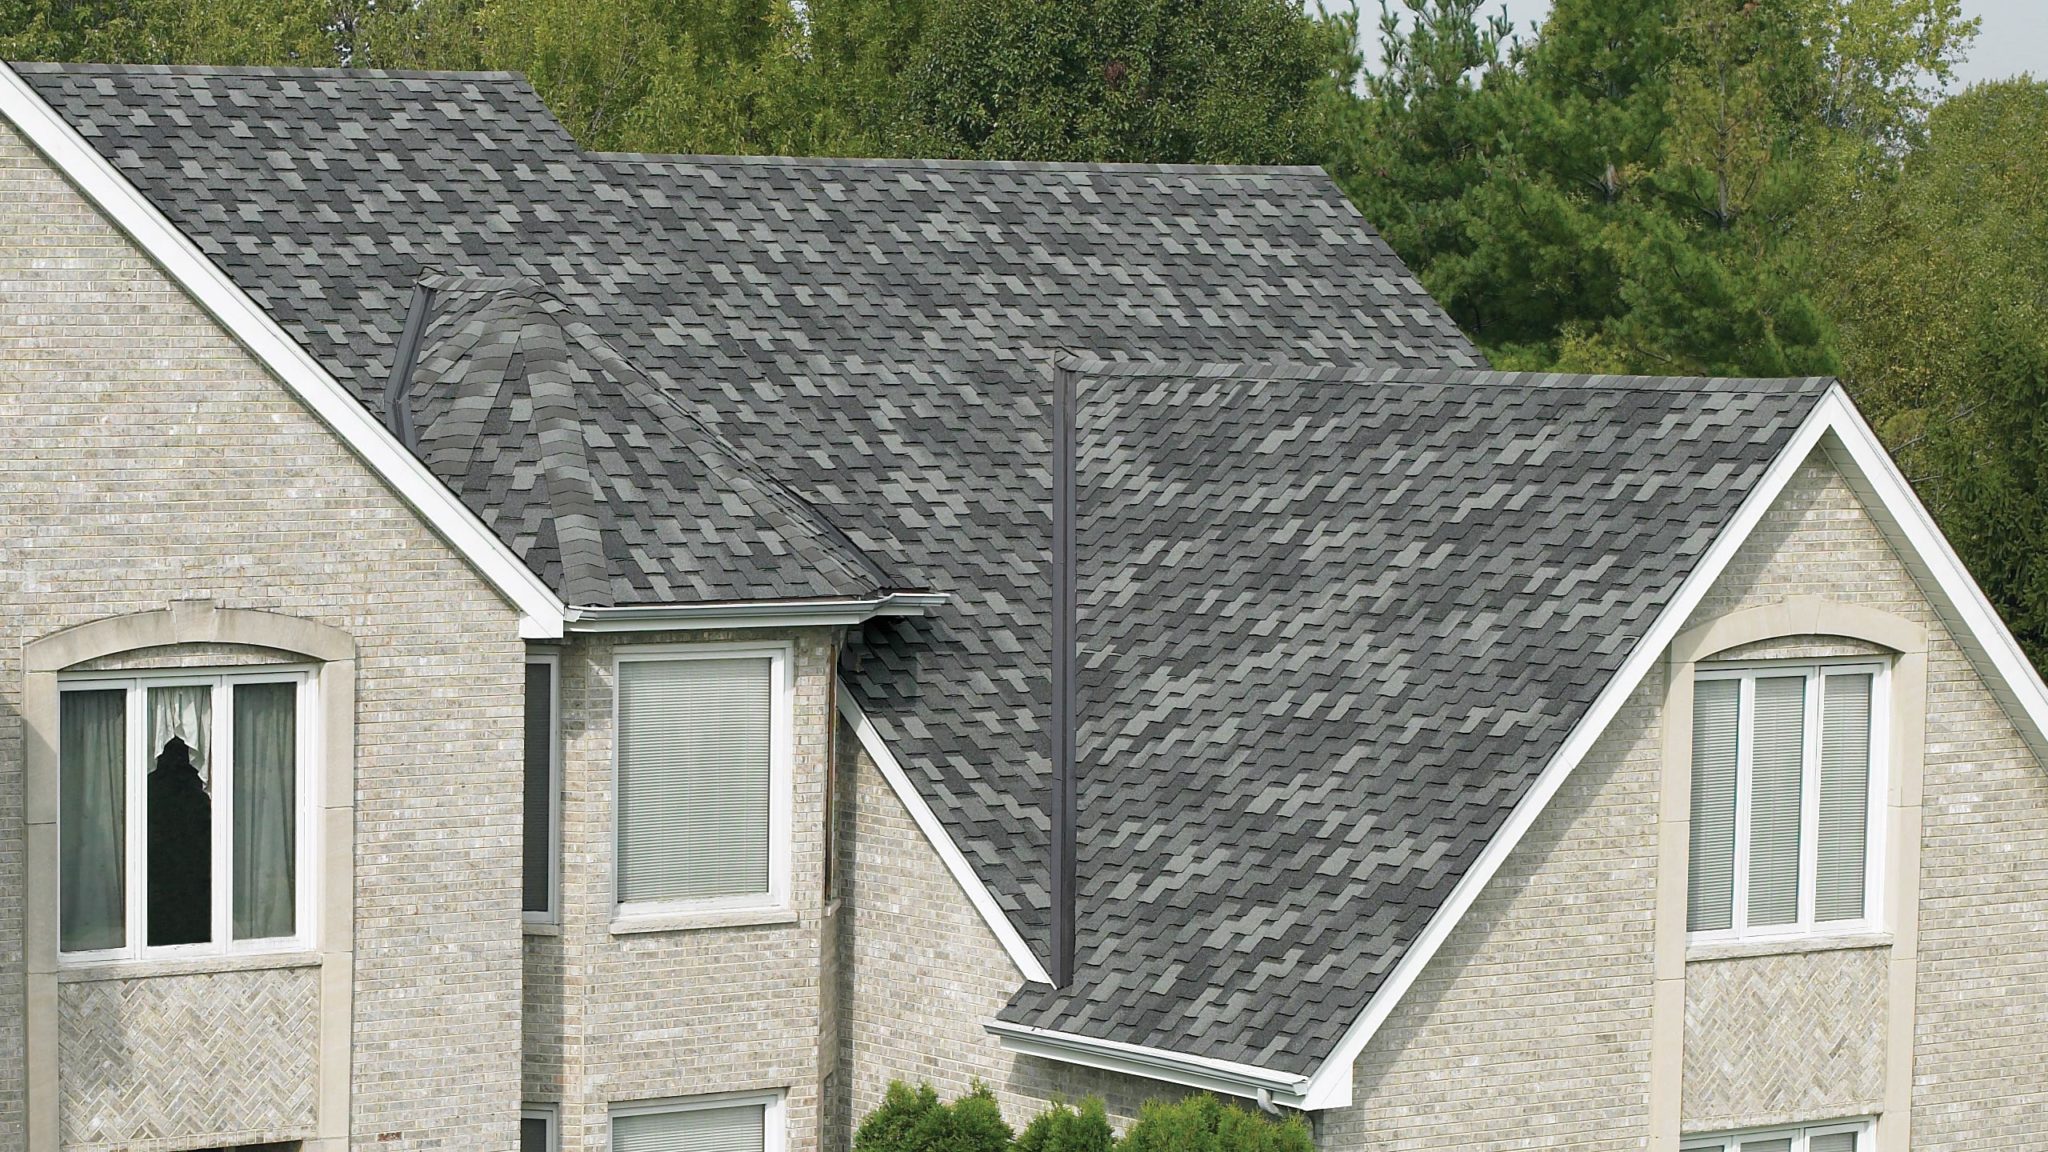 maison avec toiture de bardeaux Armourshake de IKO, couleur Pierre grise 